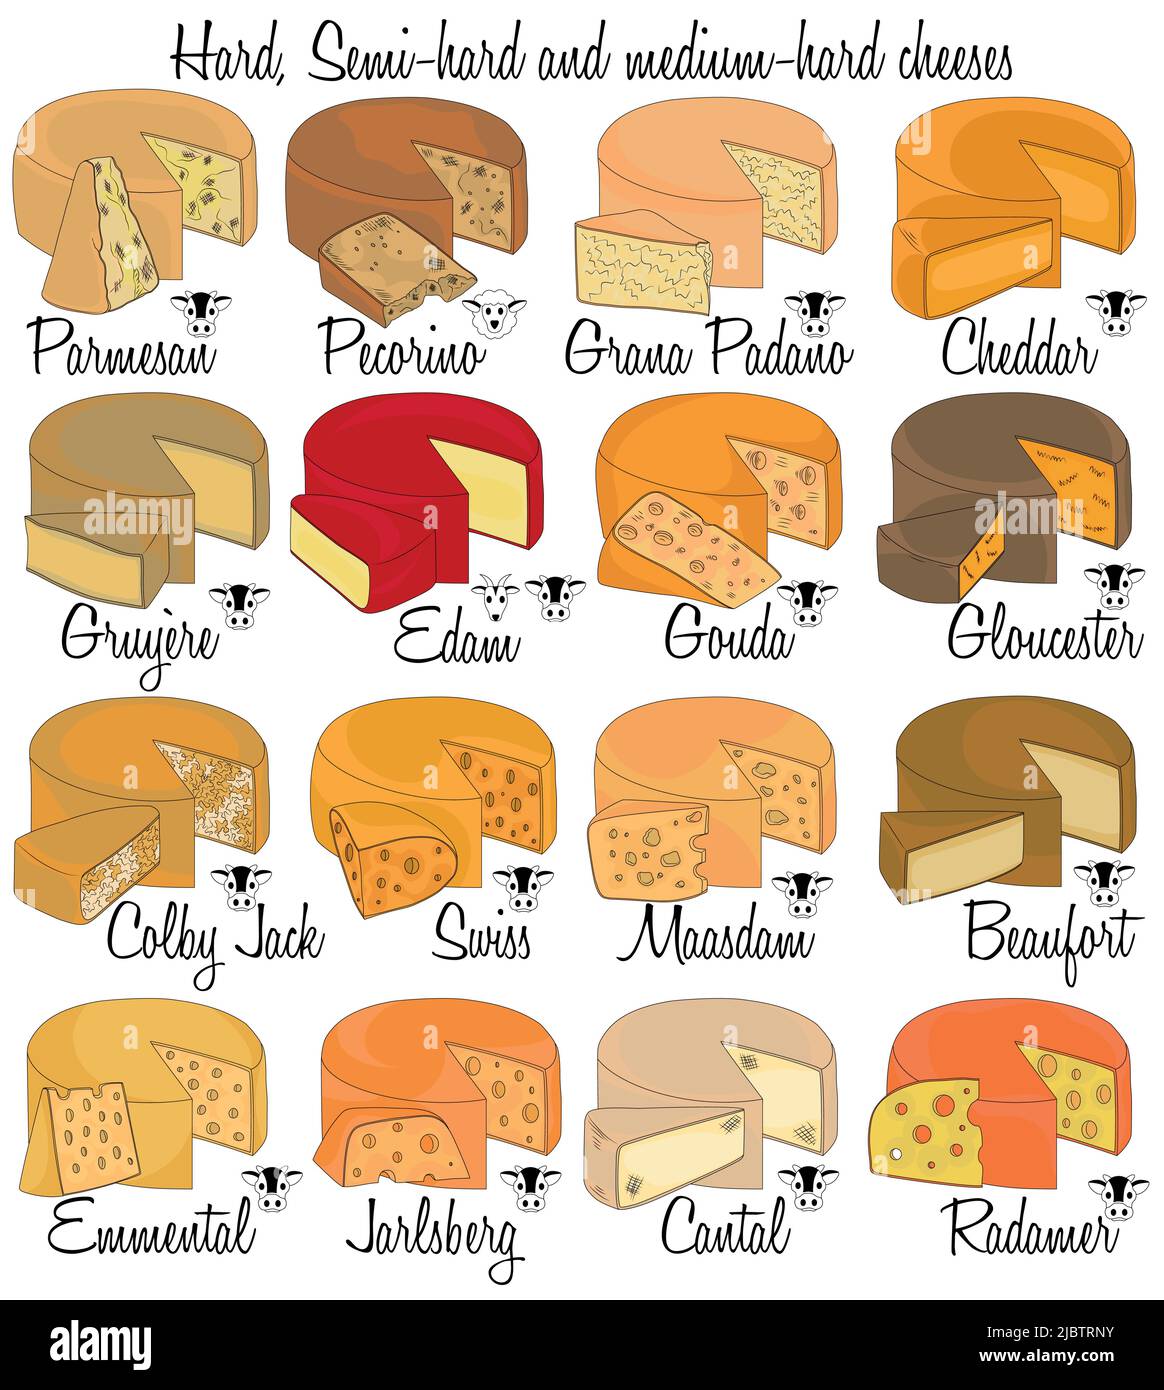 Harter, halbharter und mittelharter Käse. Farbe handgezeichnete Käsesorten mit Eigenschaften jeder Art. Stock Vektor